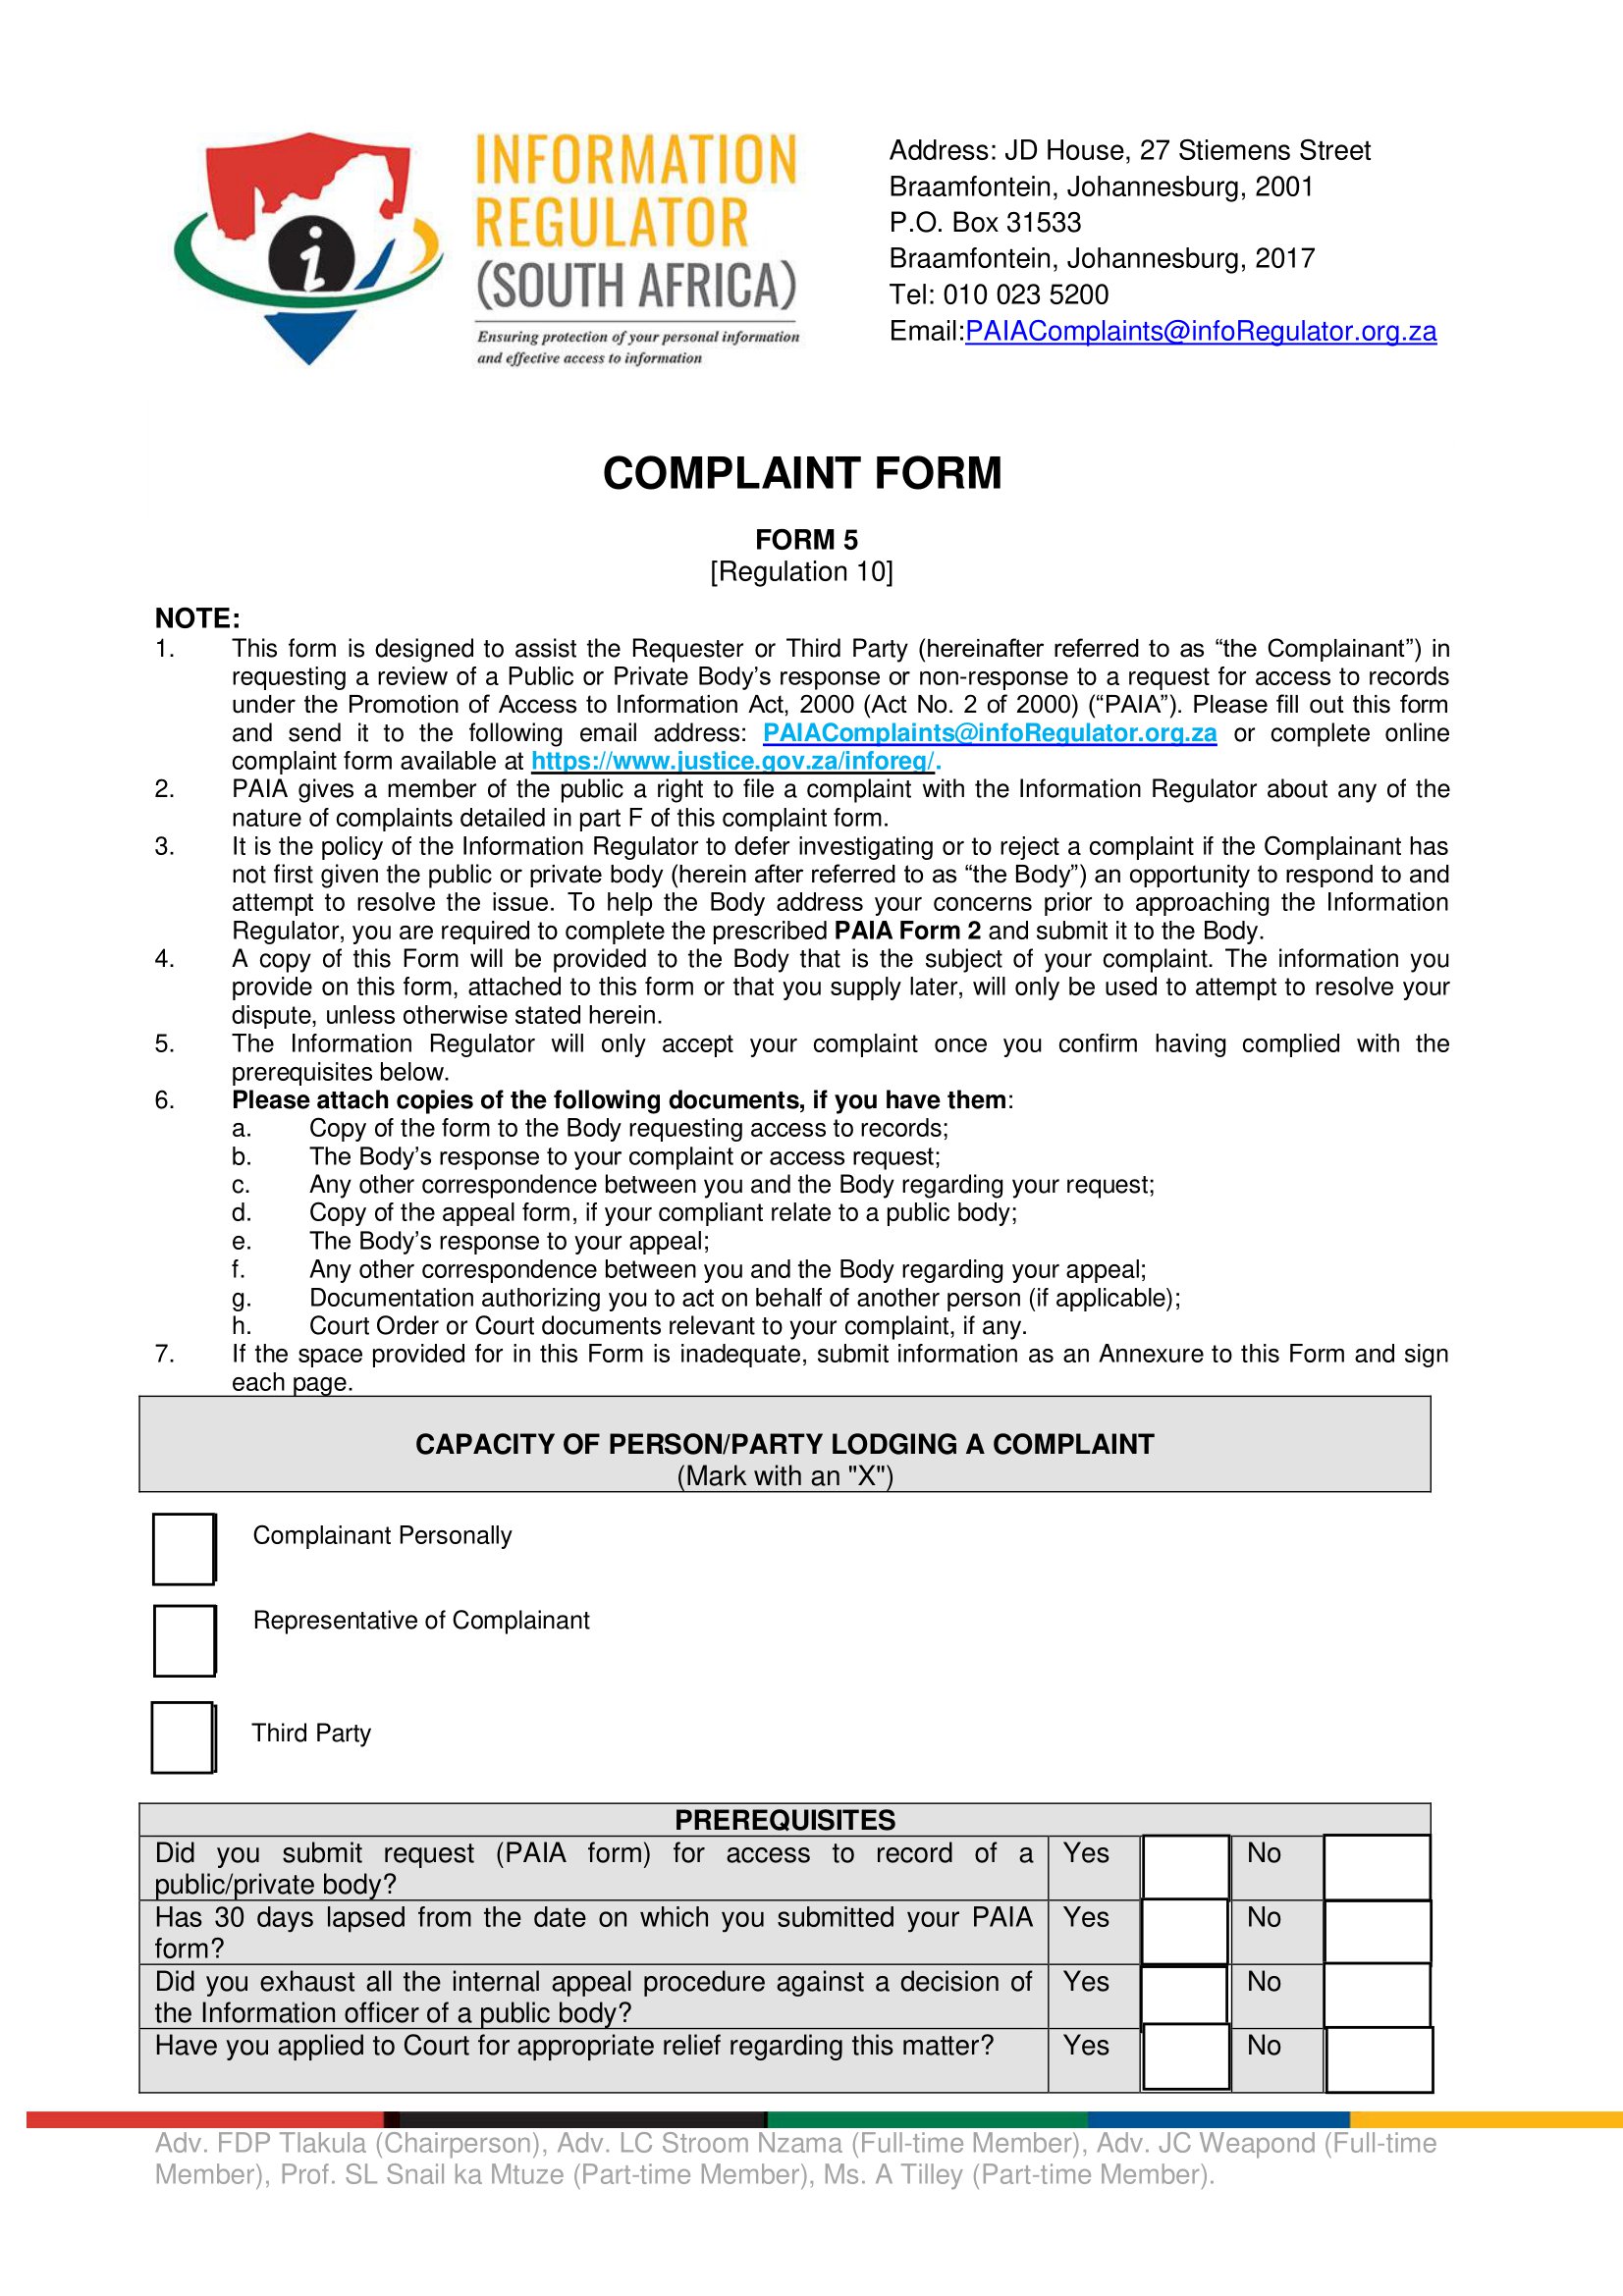 Form 5 - Complaint Form